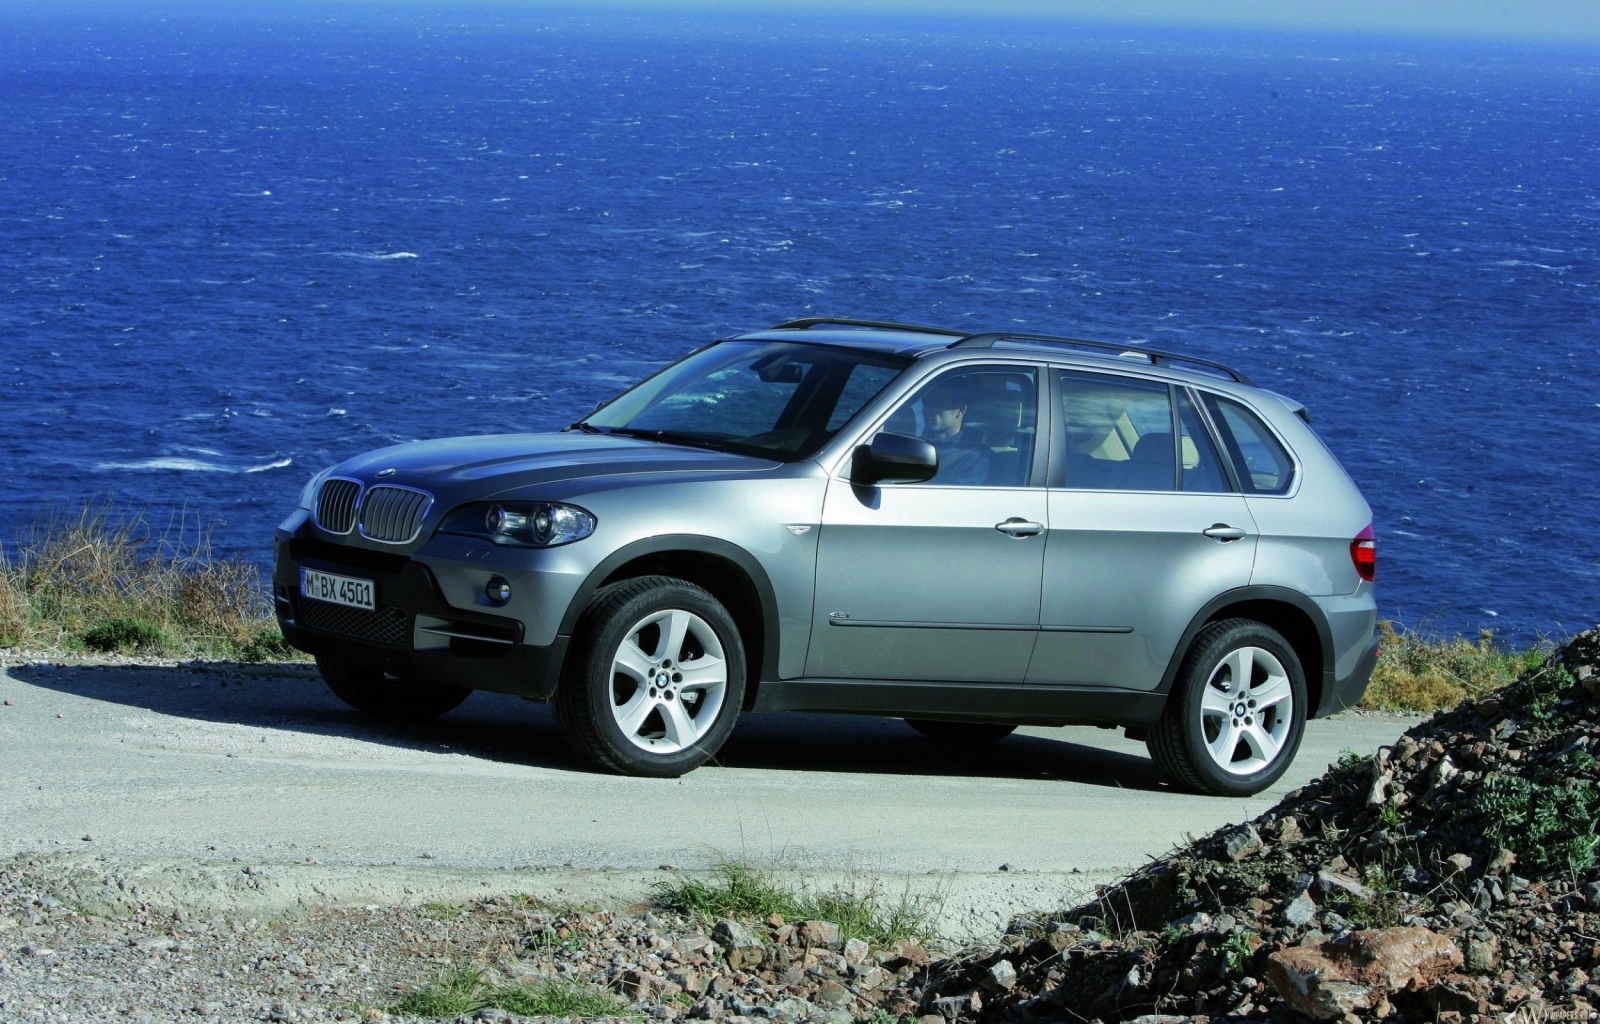 BMW - X5 (2007) 1600x1024